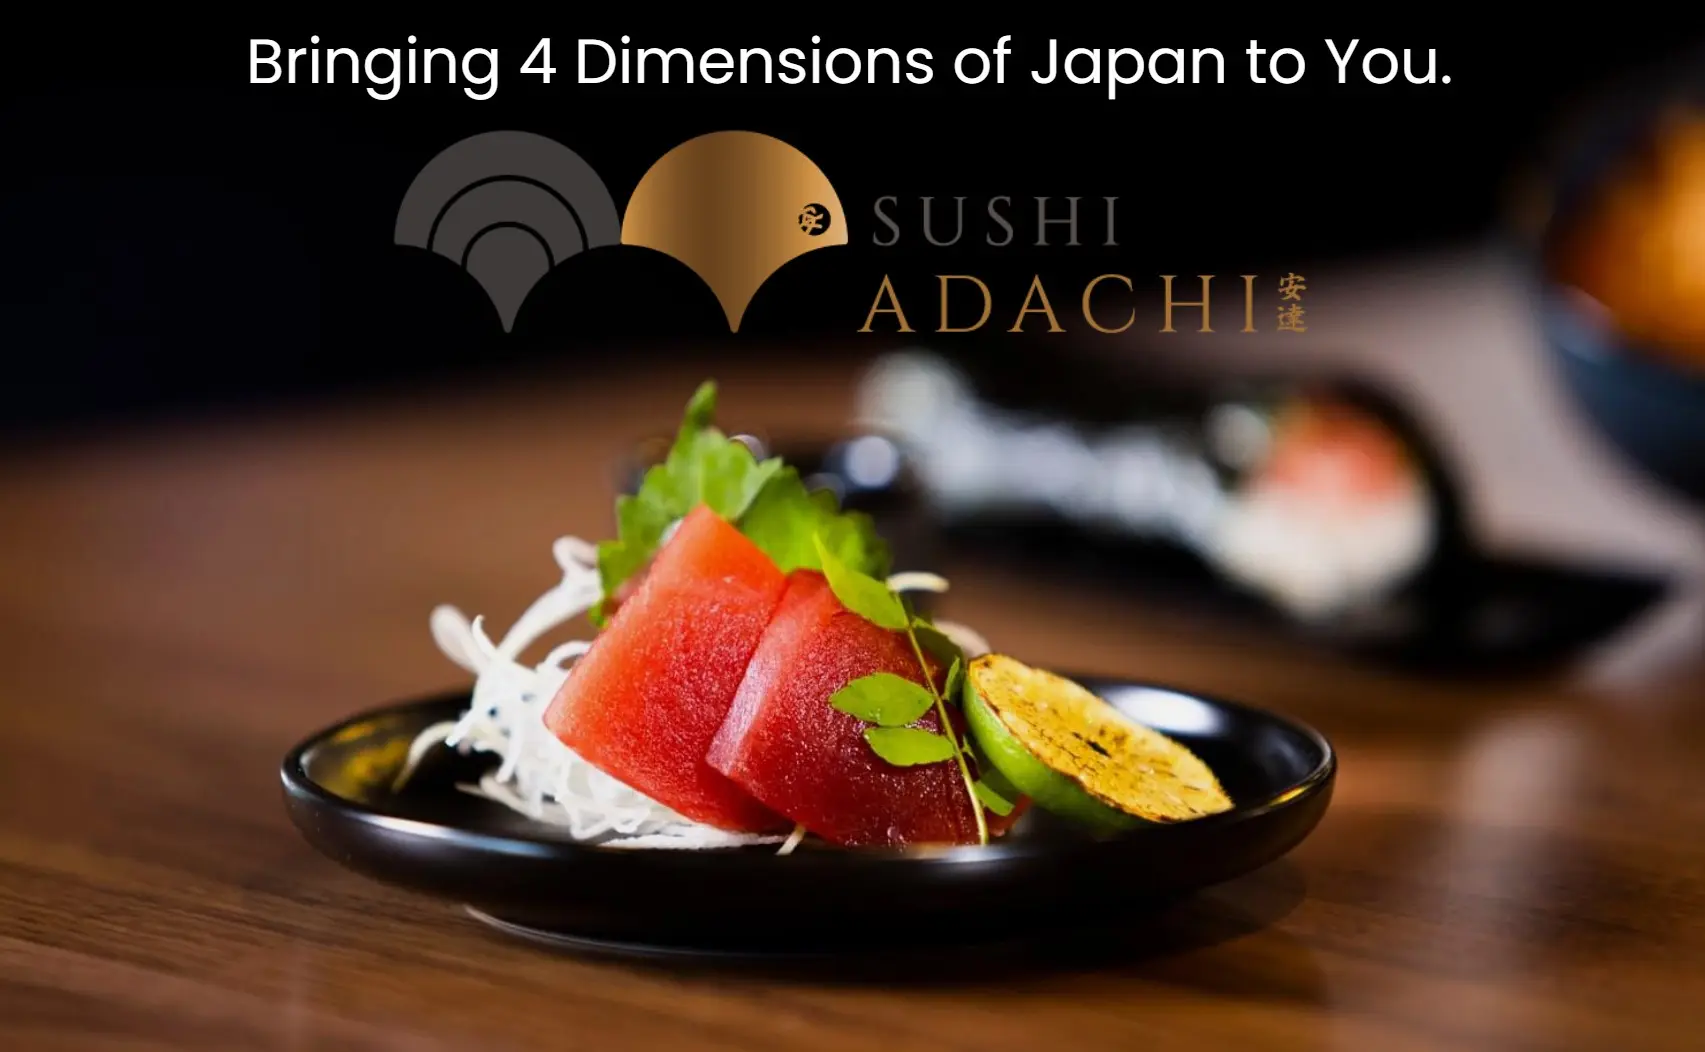 sushi_adachi_branding_6